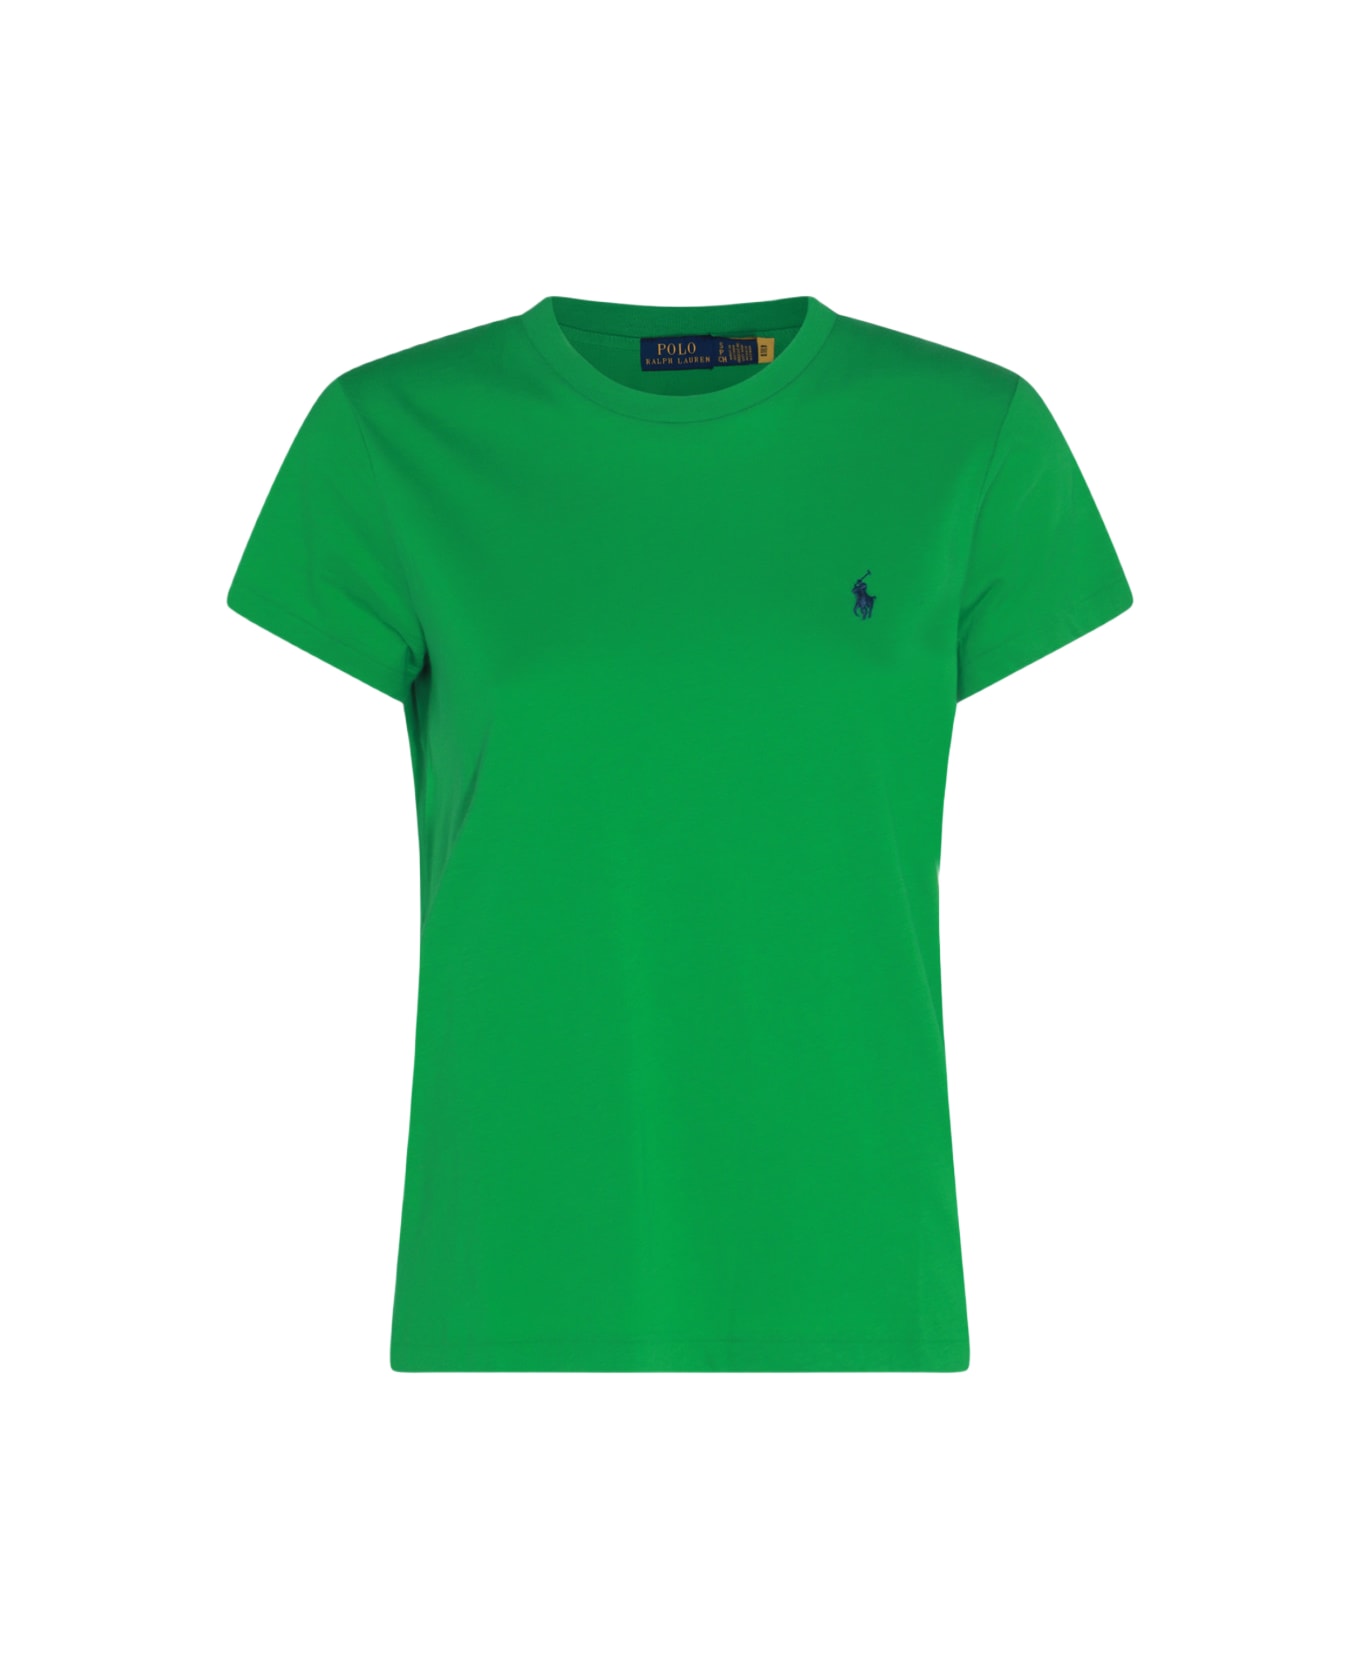 Polo Ralph Lauren Green And Blue Cotton T-shirt - Green